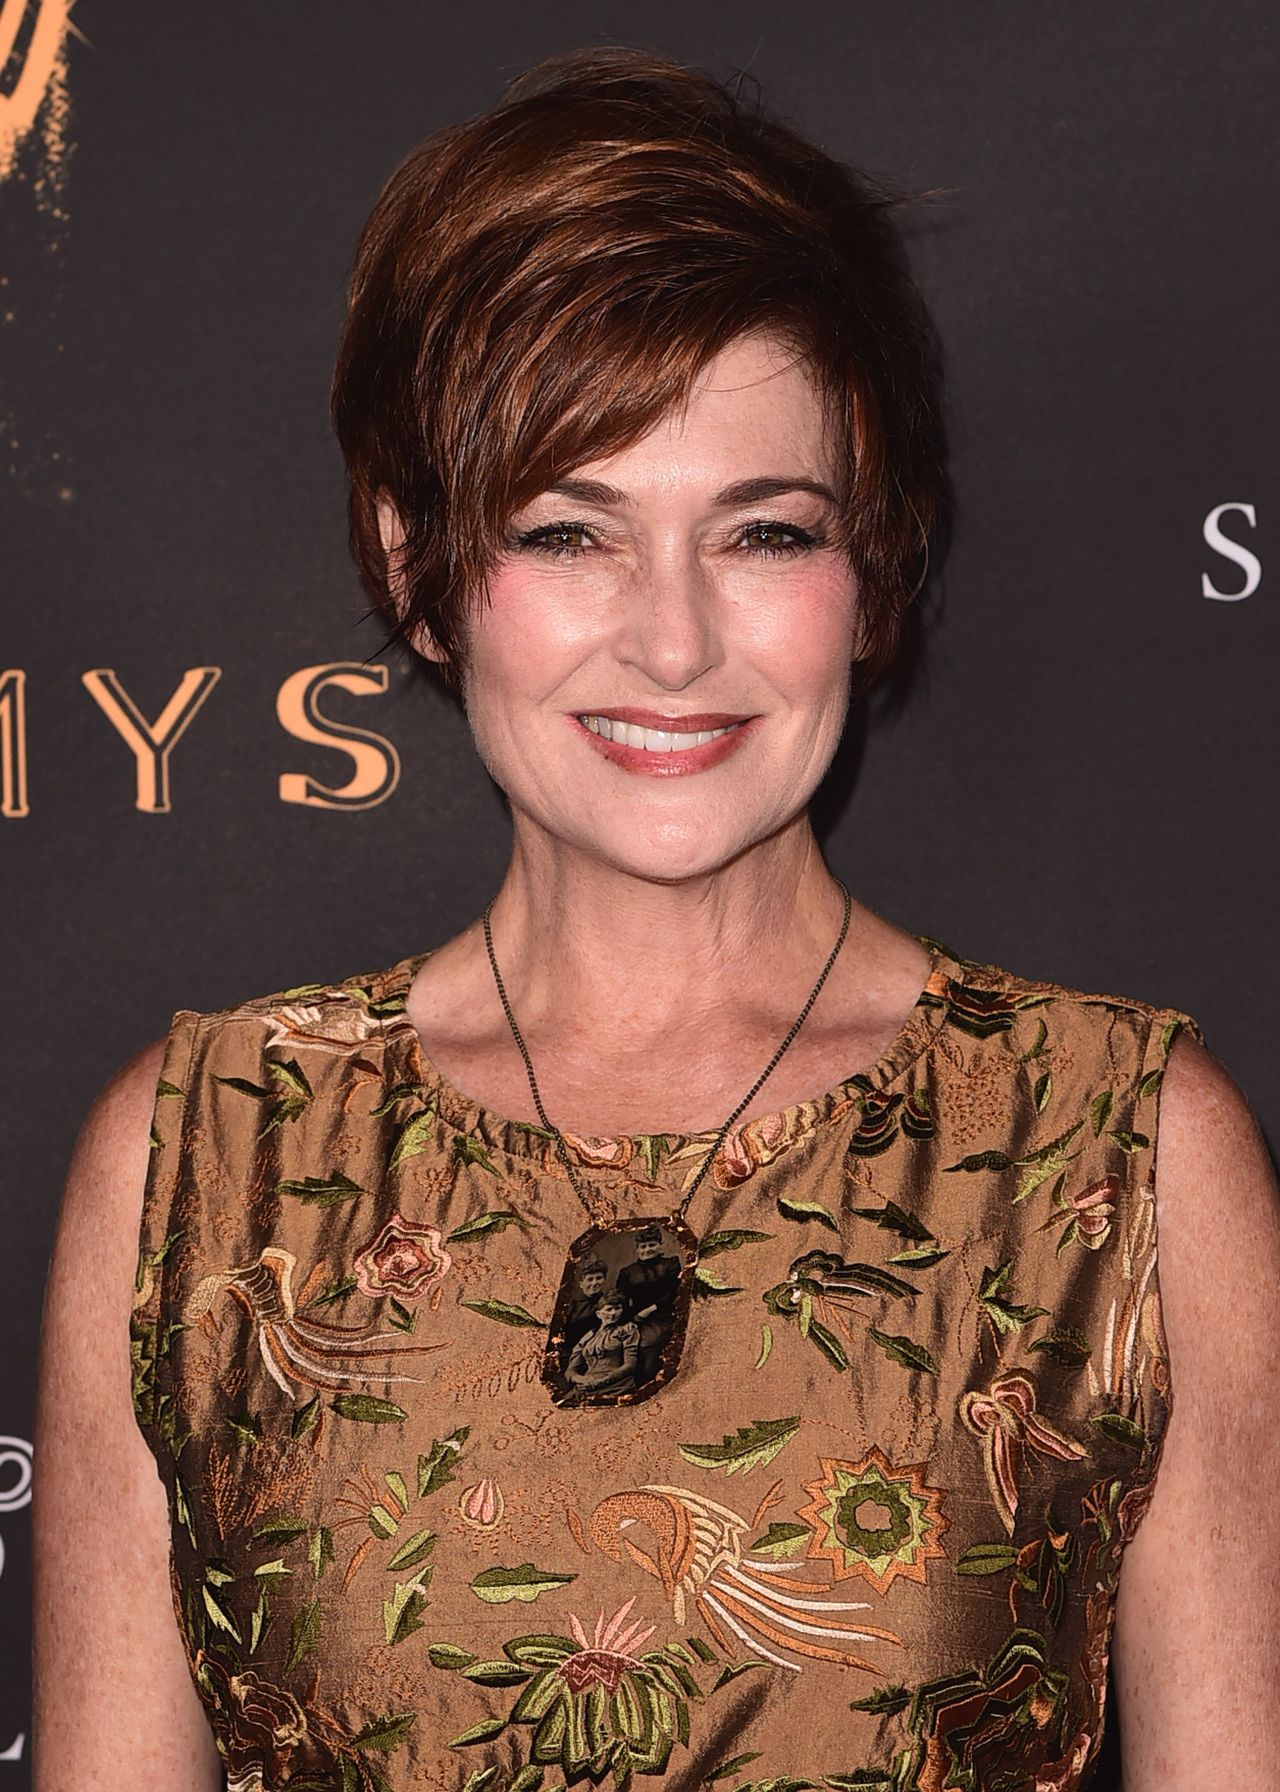 Carolyn Hennesy - Daytime Television Stars Celebrate Emmy Awards Season in ...